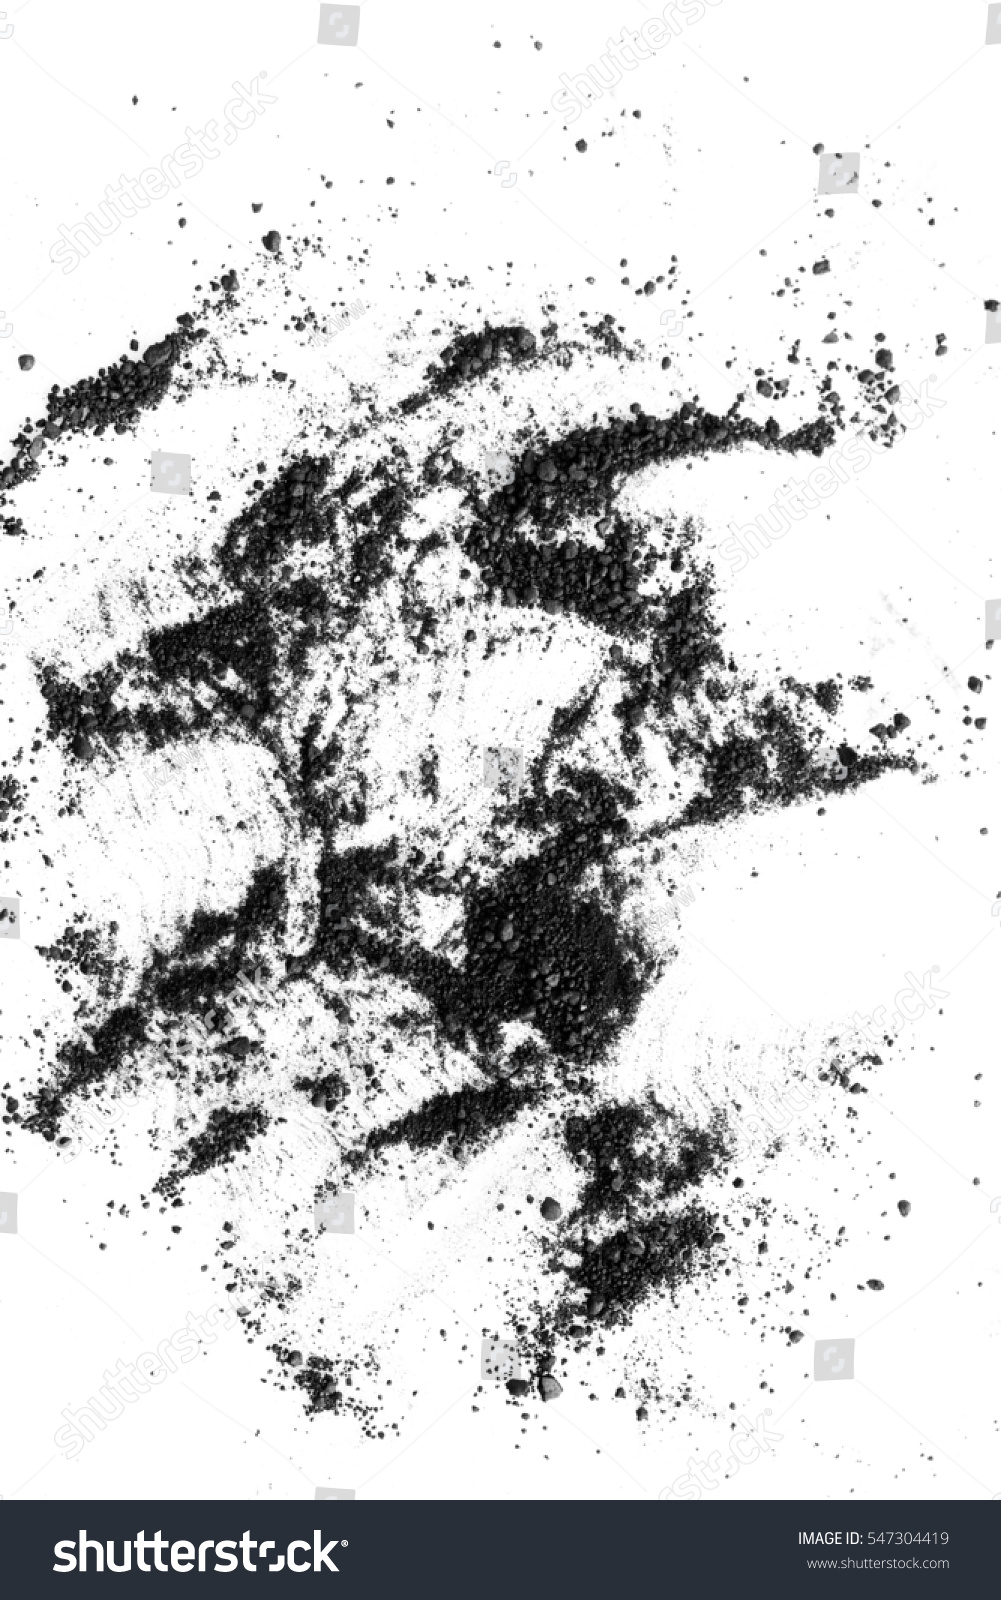 Isolated Black Powder On White Background Stock Photo 547304419